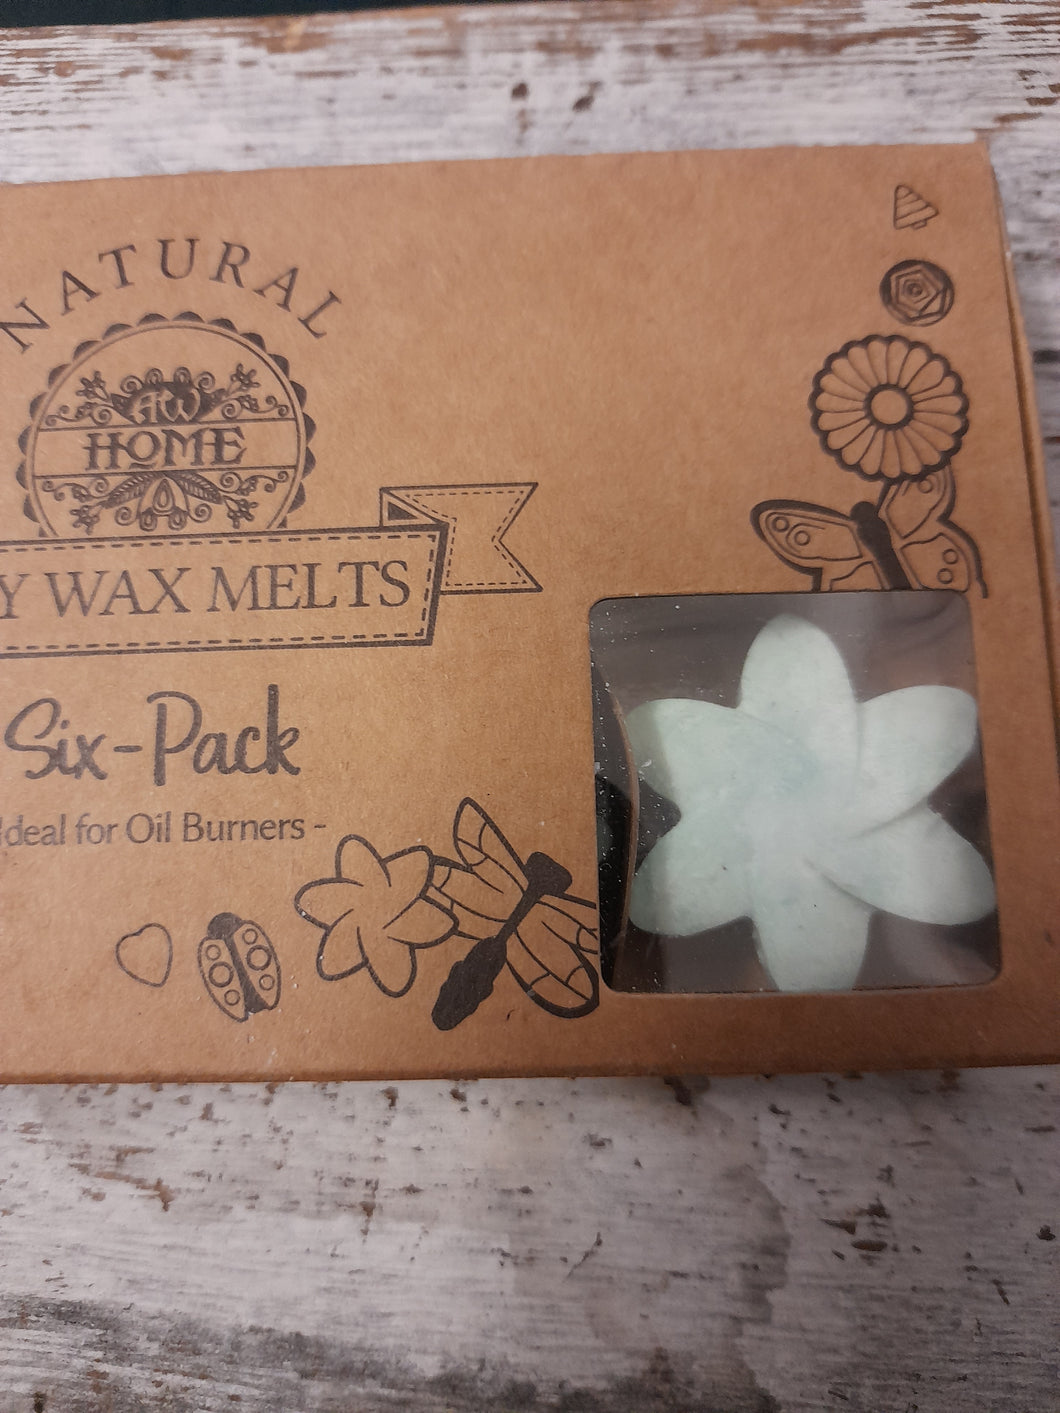 soy wax melts six -pack - Hidden garden